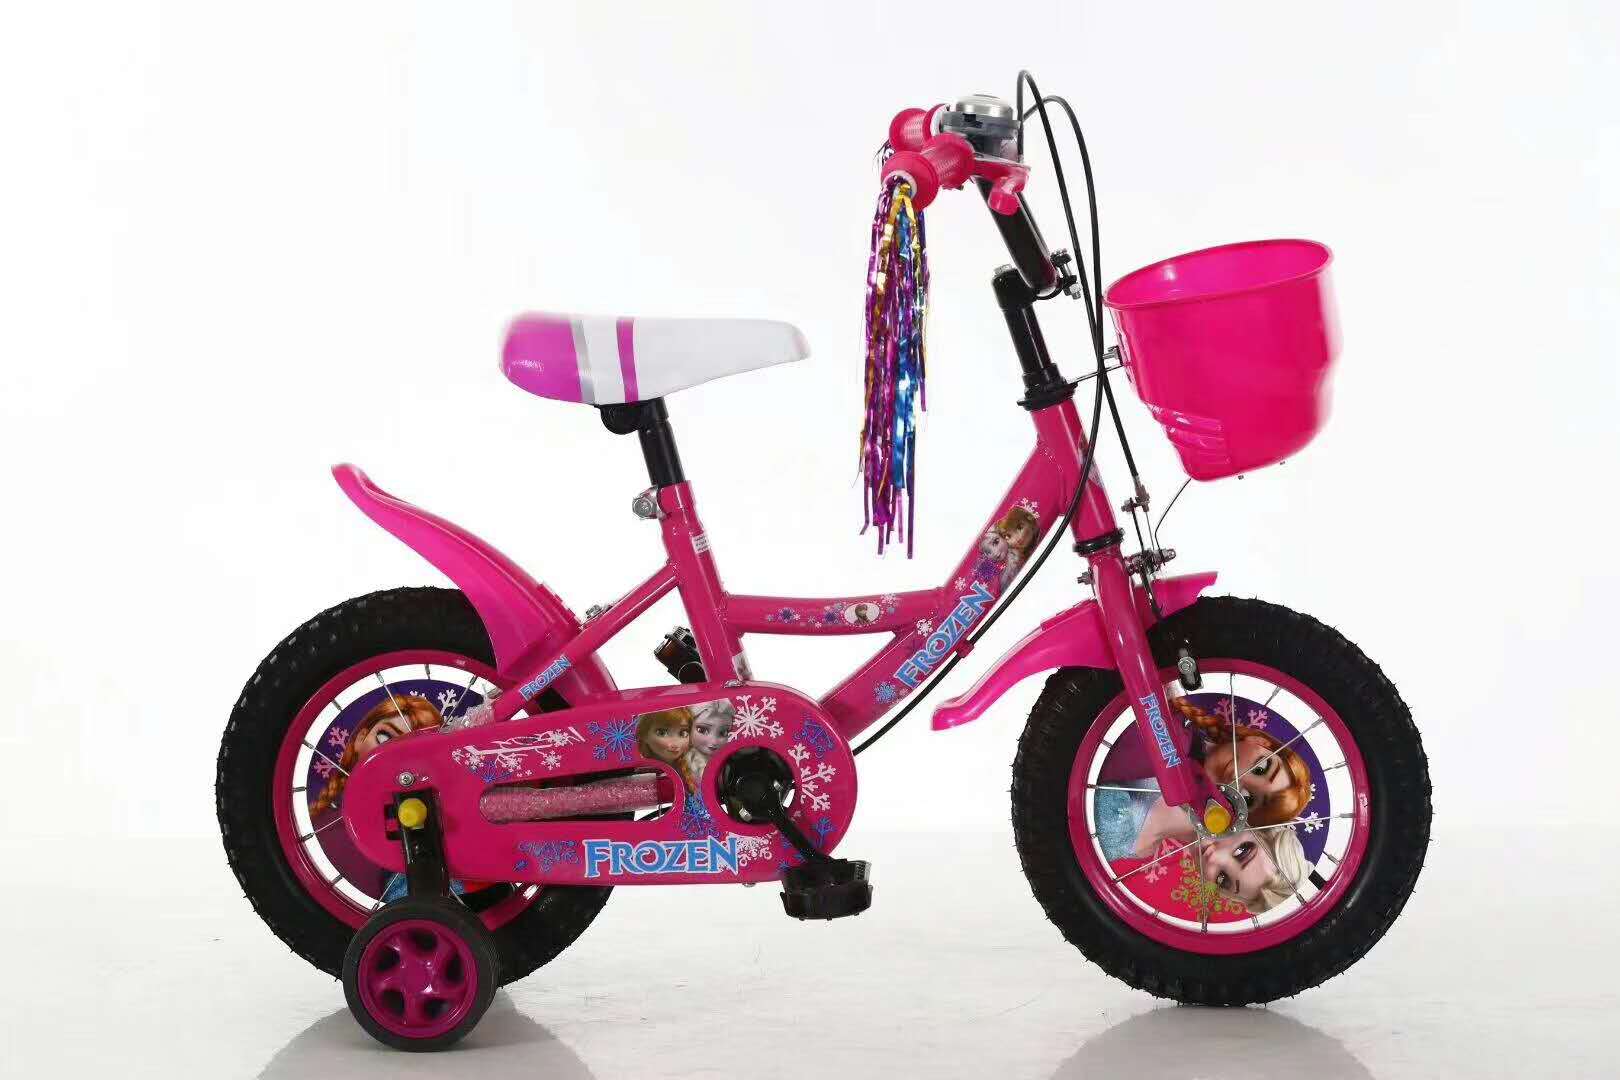 女款自行车121416寸新款冰雪儿童童车男女儿童骑行自行车产品图